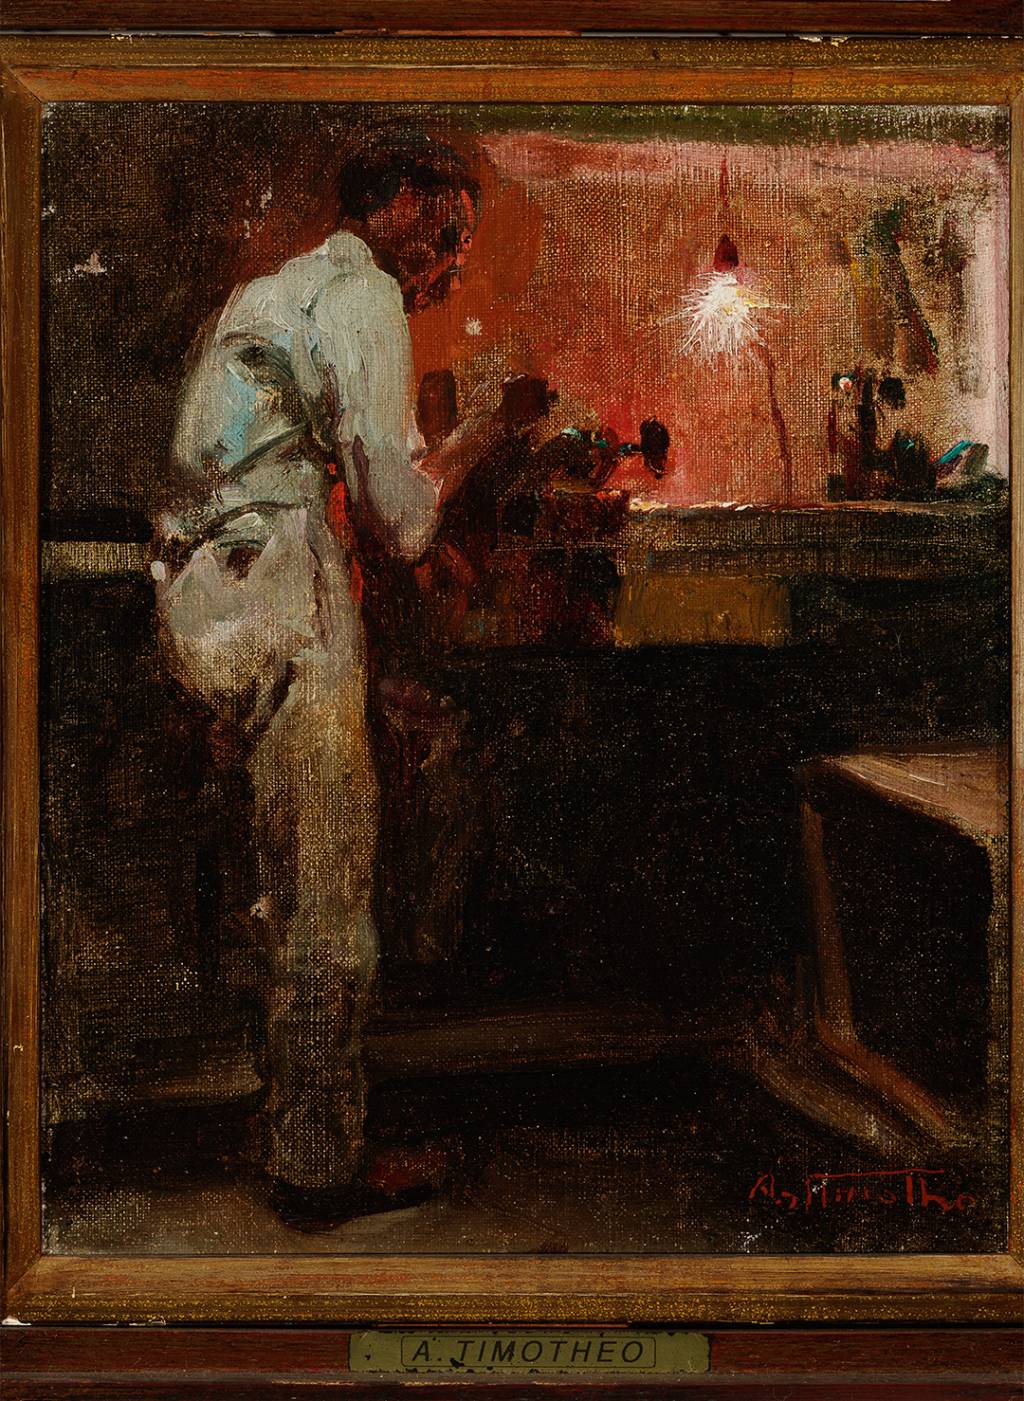 Ferreiro, 1910, Artur Timótheo da Costa